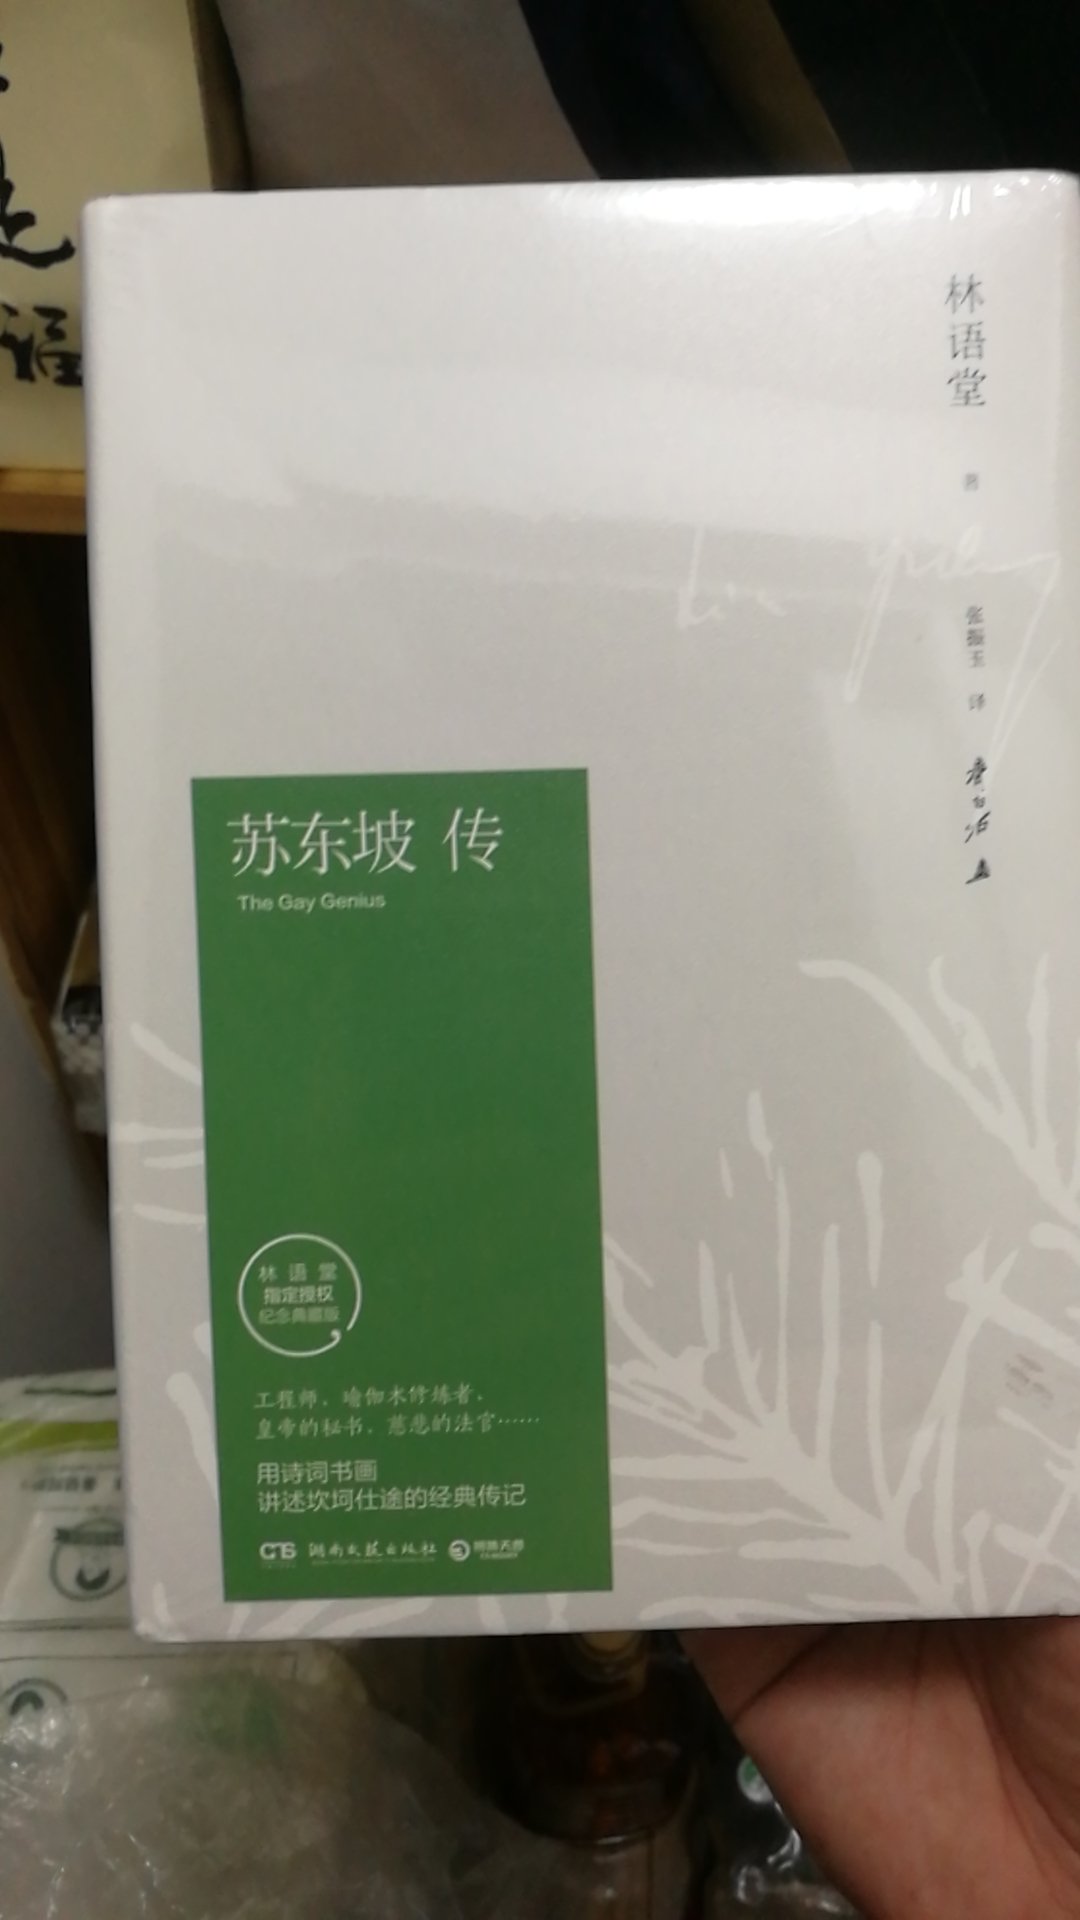 包装完好，绝对正版，林语堂的书个人很喜欢，推荐购买